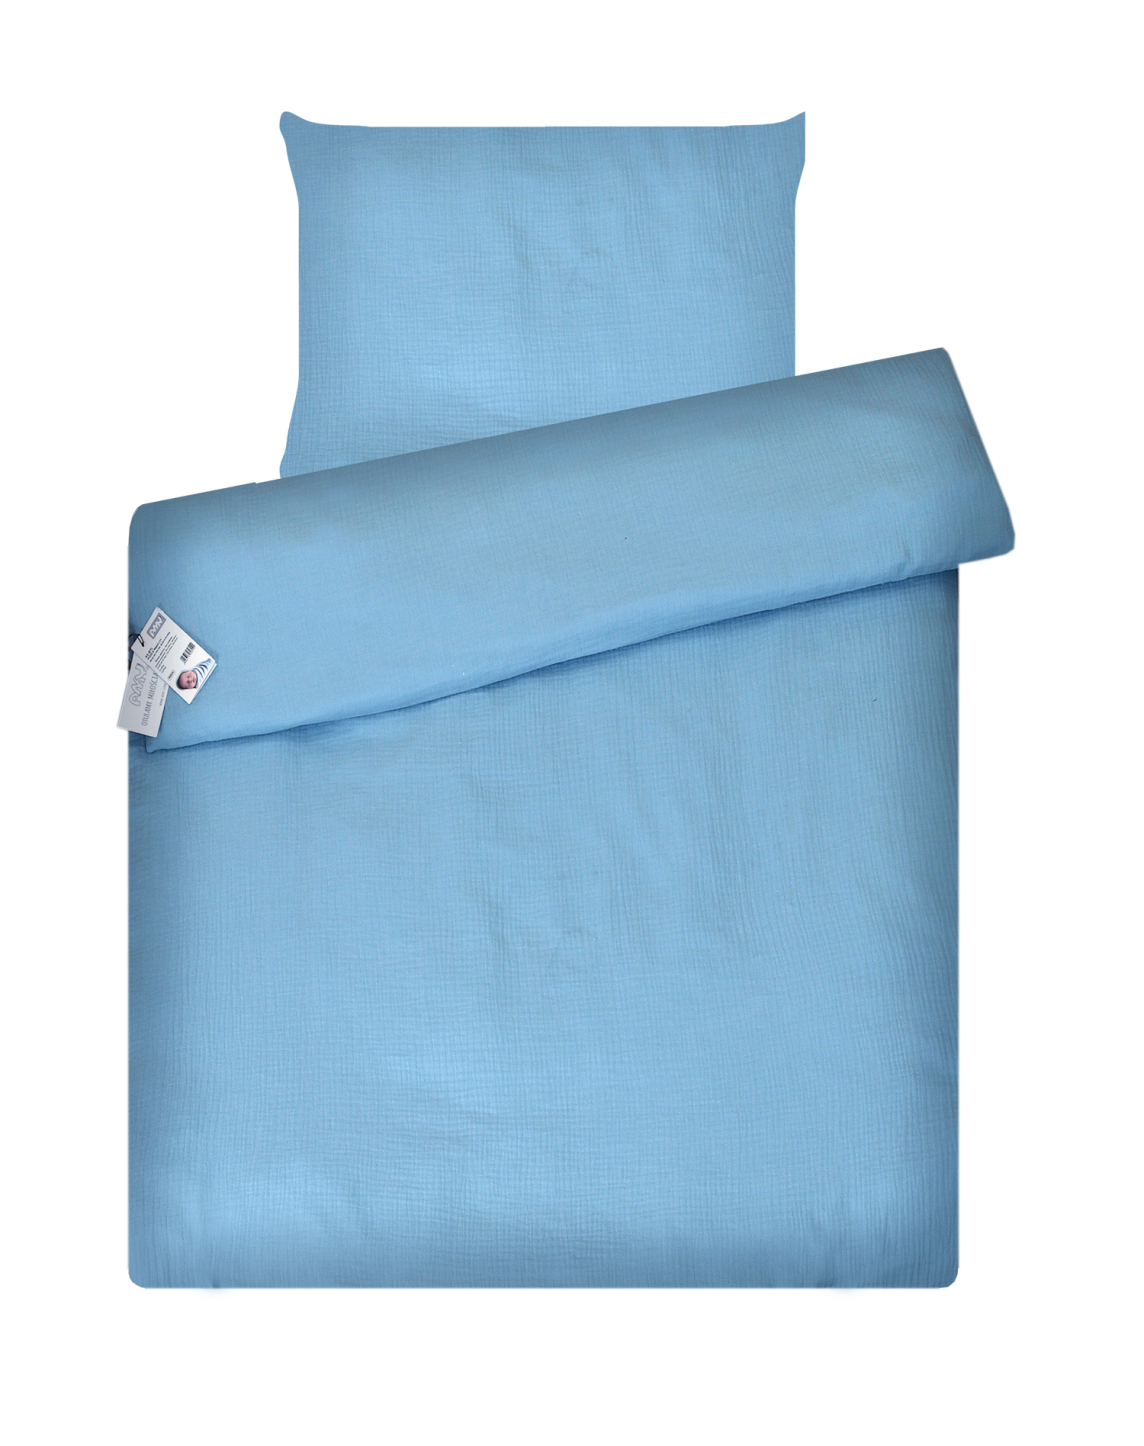 婴儿床床上用品 2 元素艾米拼图平纹细布蓝色